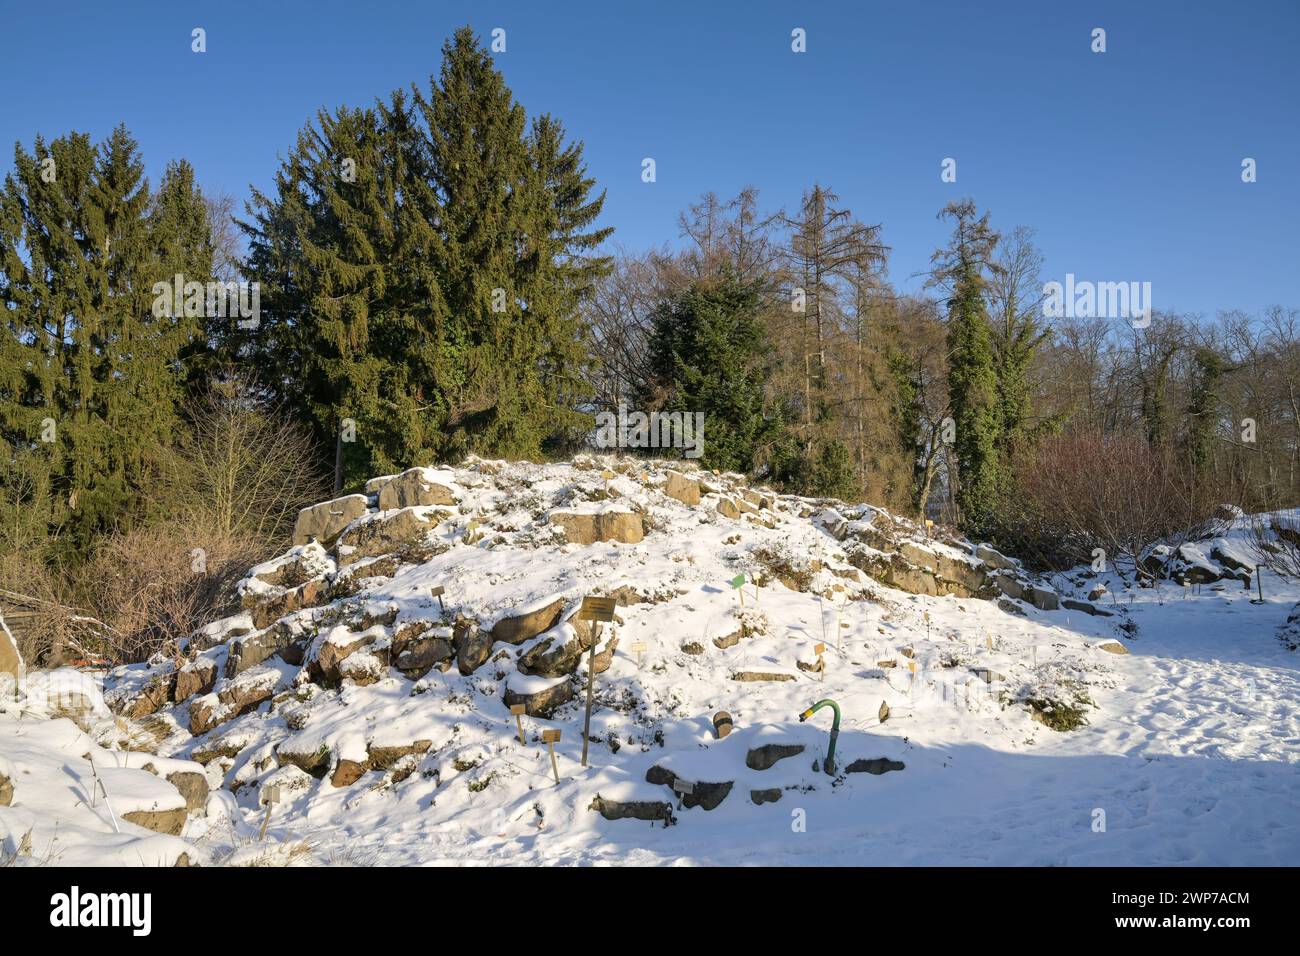 Winter, Freigelände, Landschaftsgarten Nördliche Kalkalpen, Botanischer Garten, Lichterfelde, Steglitz-Zehlendorf, Berlin, Deutschland Stock Photo